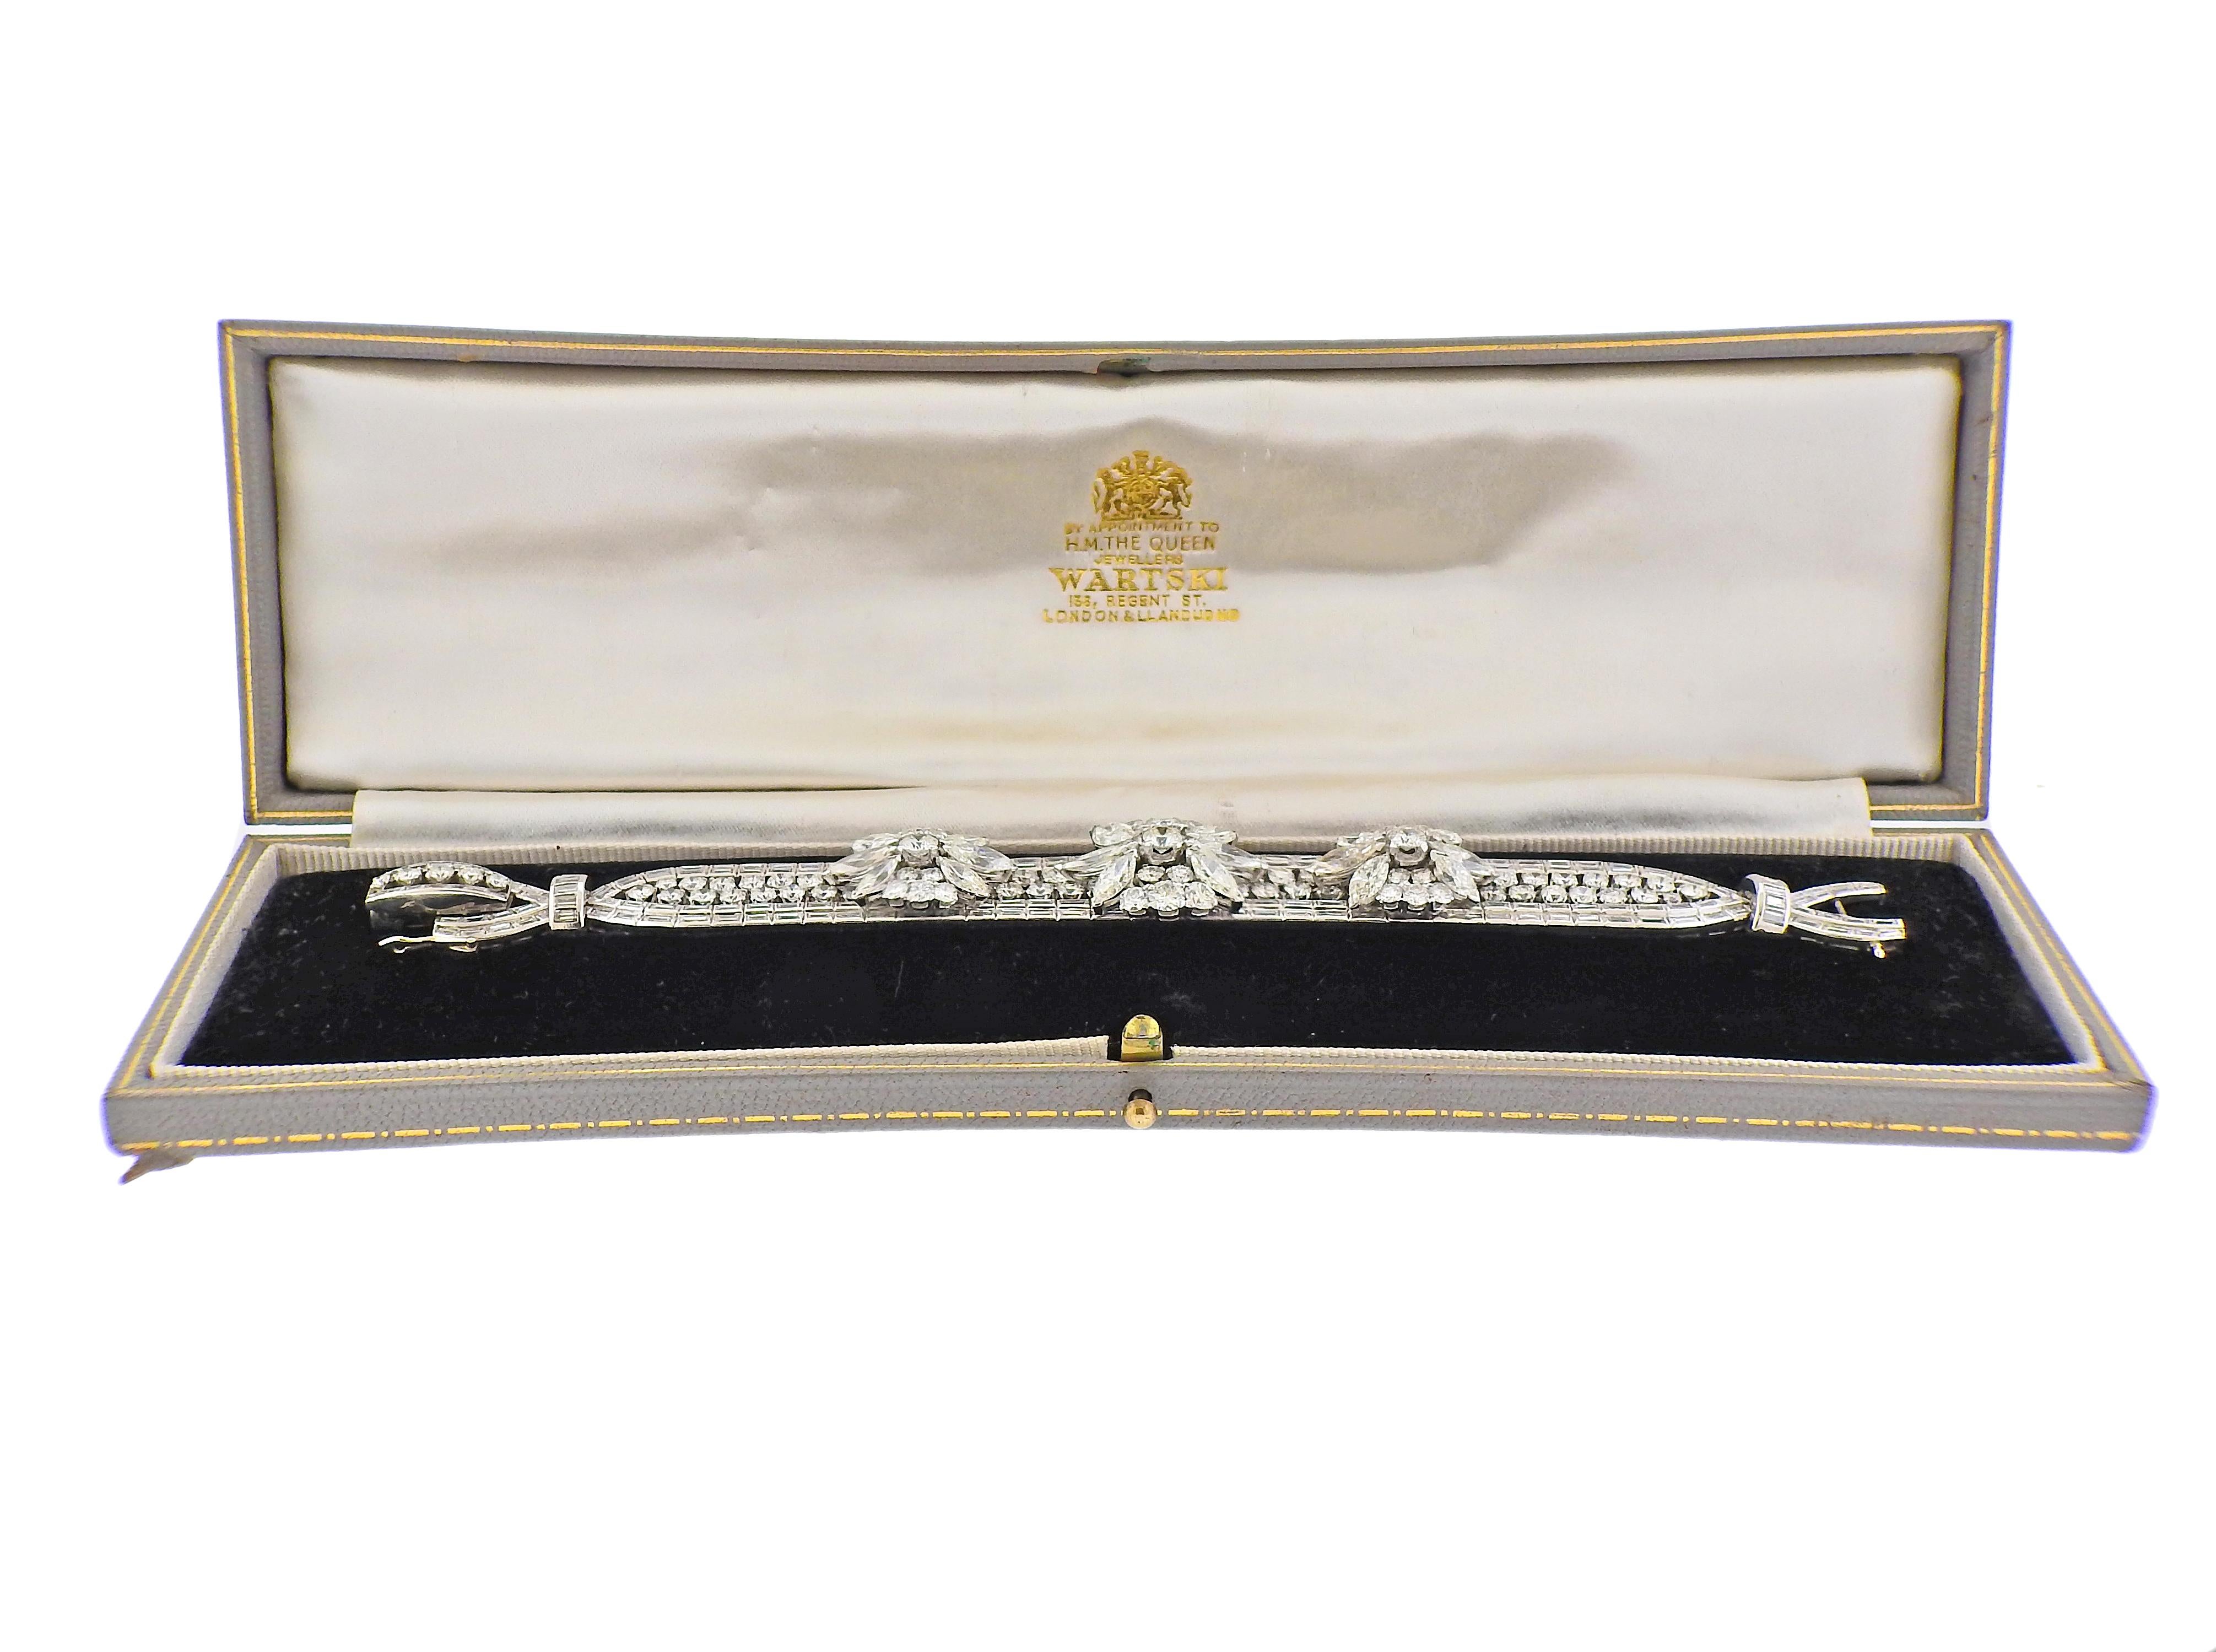 Circa 1930, Important bracelet en platine, serti d'une combinaison de diamants ronds, baguettes et marquises - environ 25 carats au total, toutes les pierres sont VS1-SI1, couleur GH. Le bracelet mesure 6,5